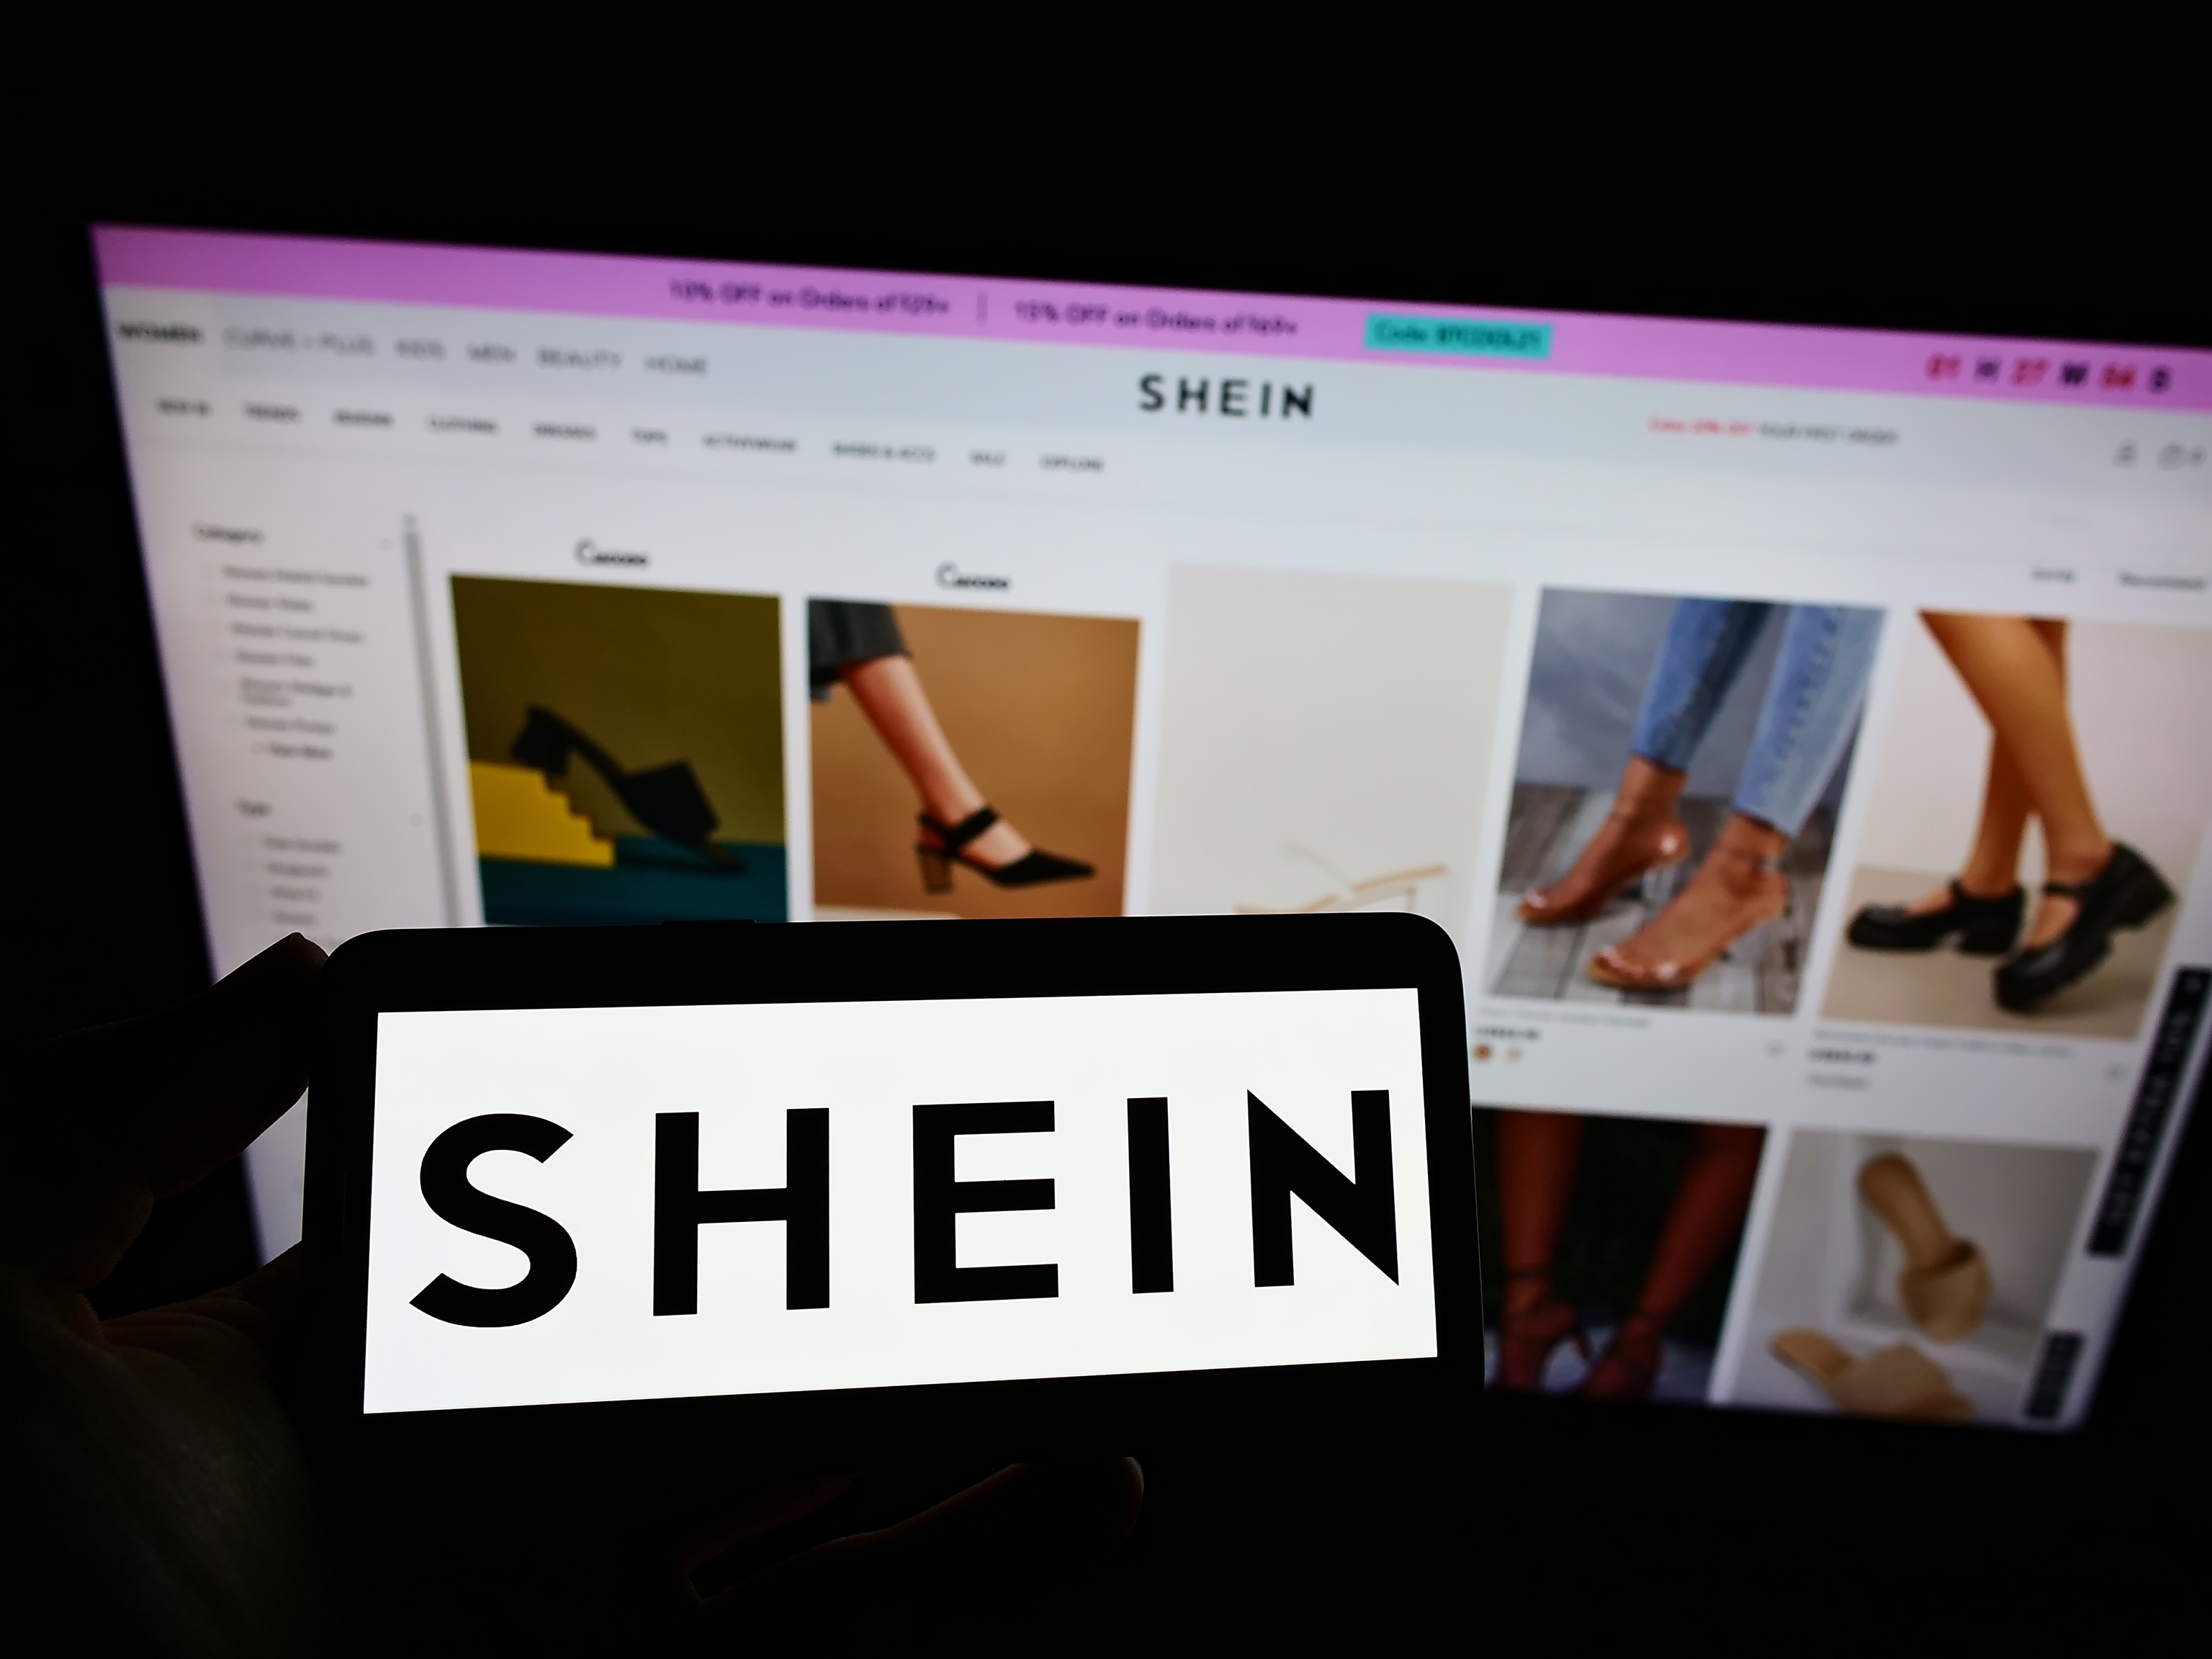 Shein vende prendas txicas: Greenpeace Alemania alerta del fenmeno de la moda ultrarrpida